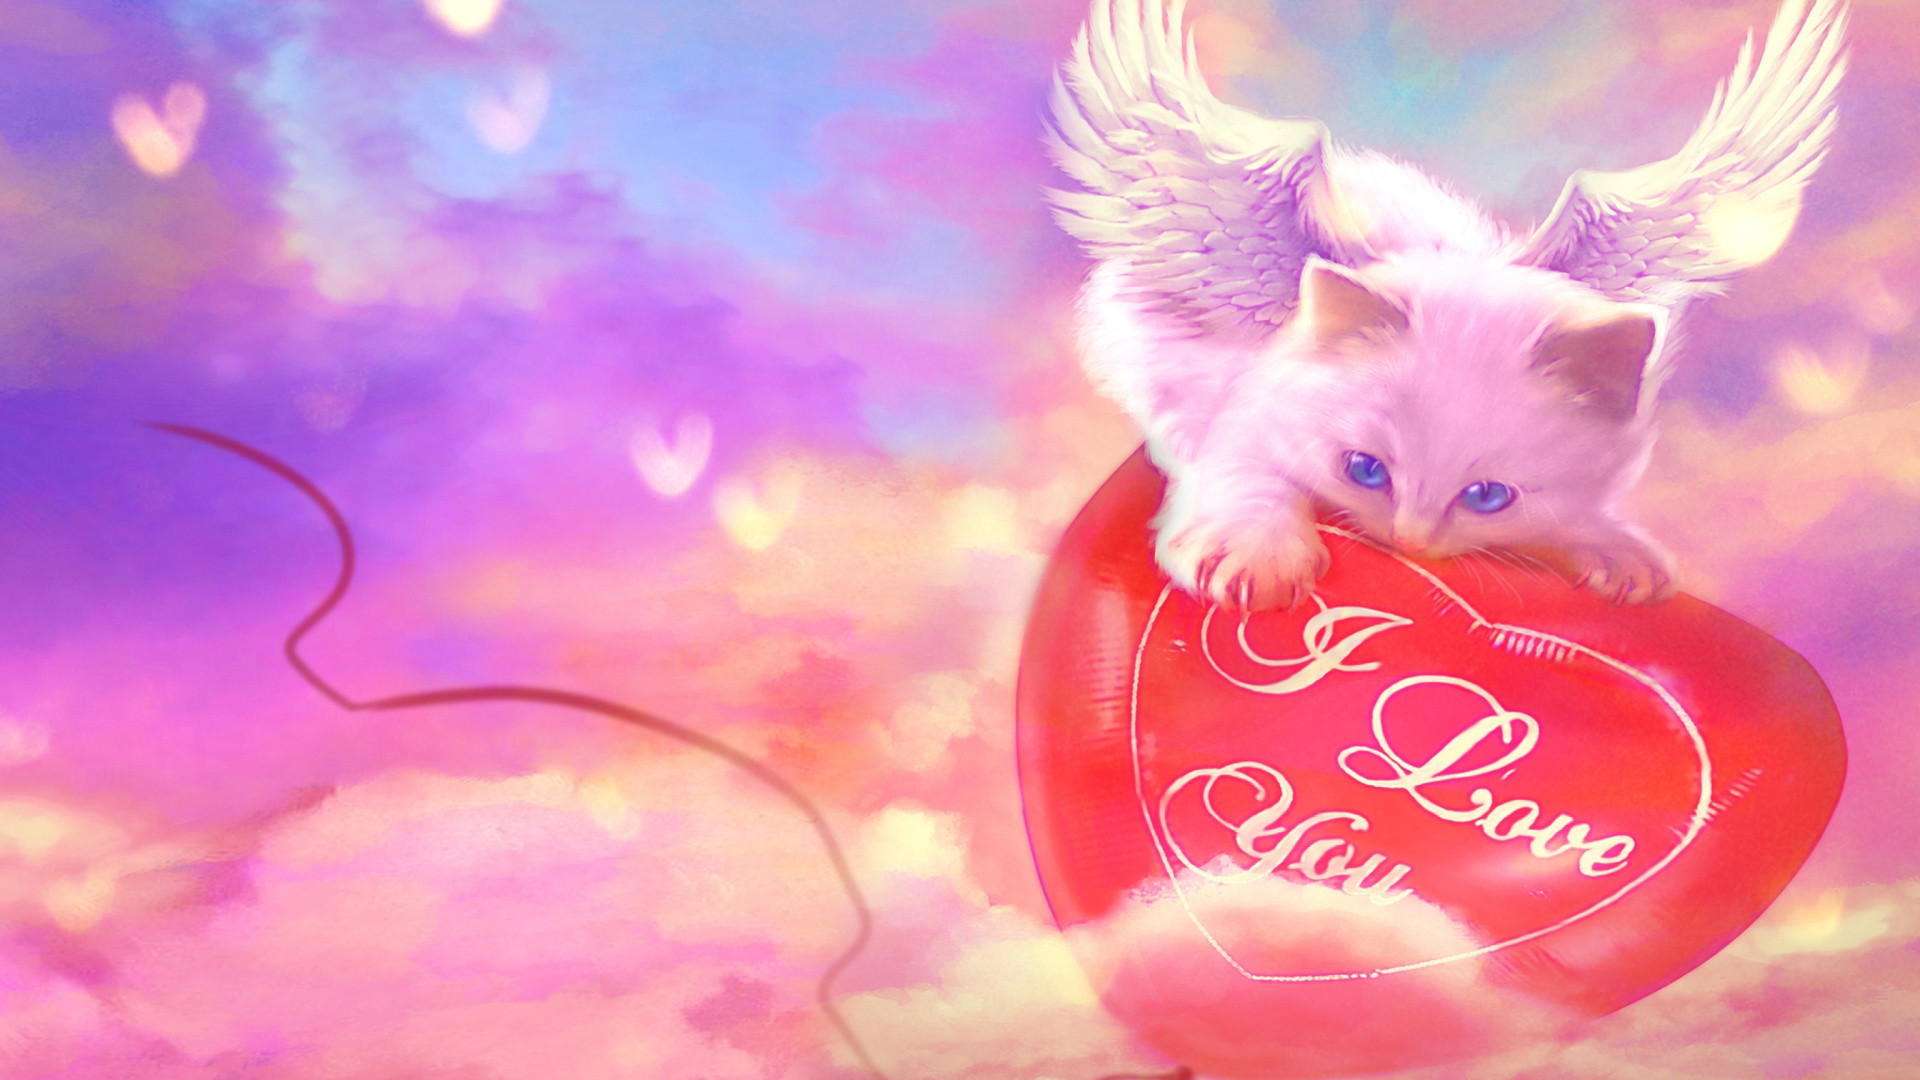 1920x1080 Download now full hd wallpaper cat blue eyes wings heart cute ...